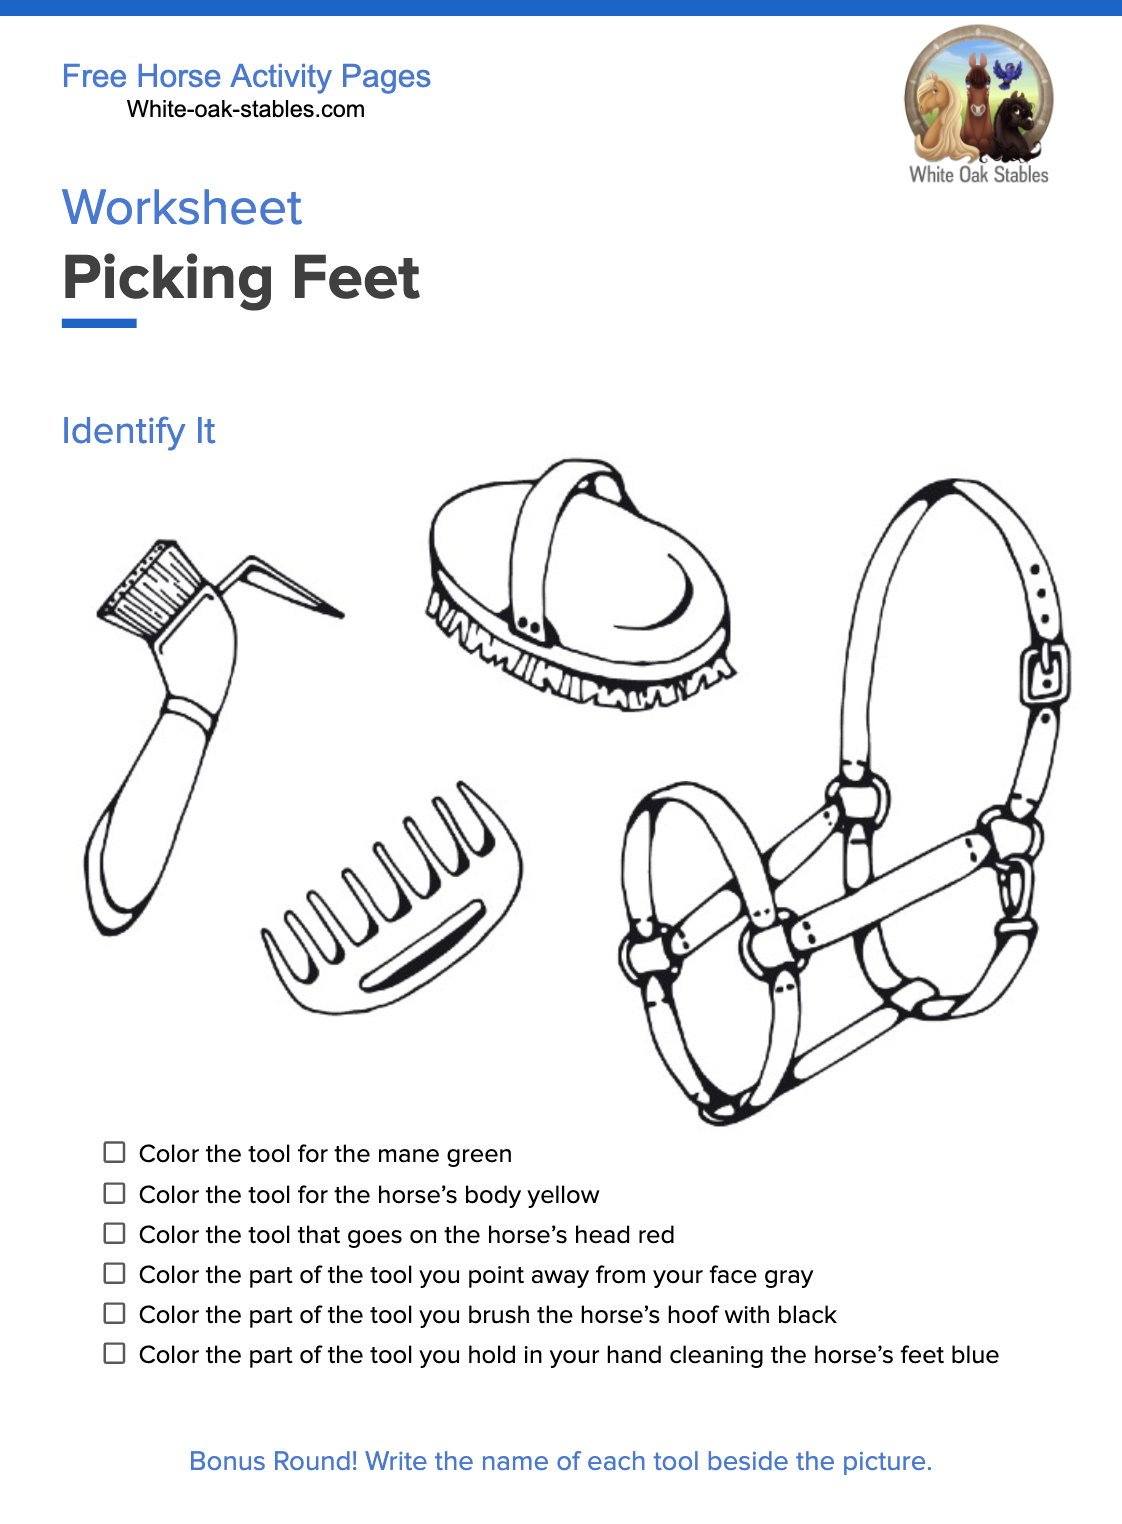 Worksheet – Picking Feet